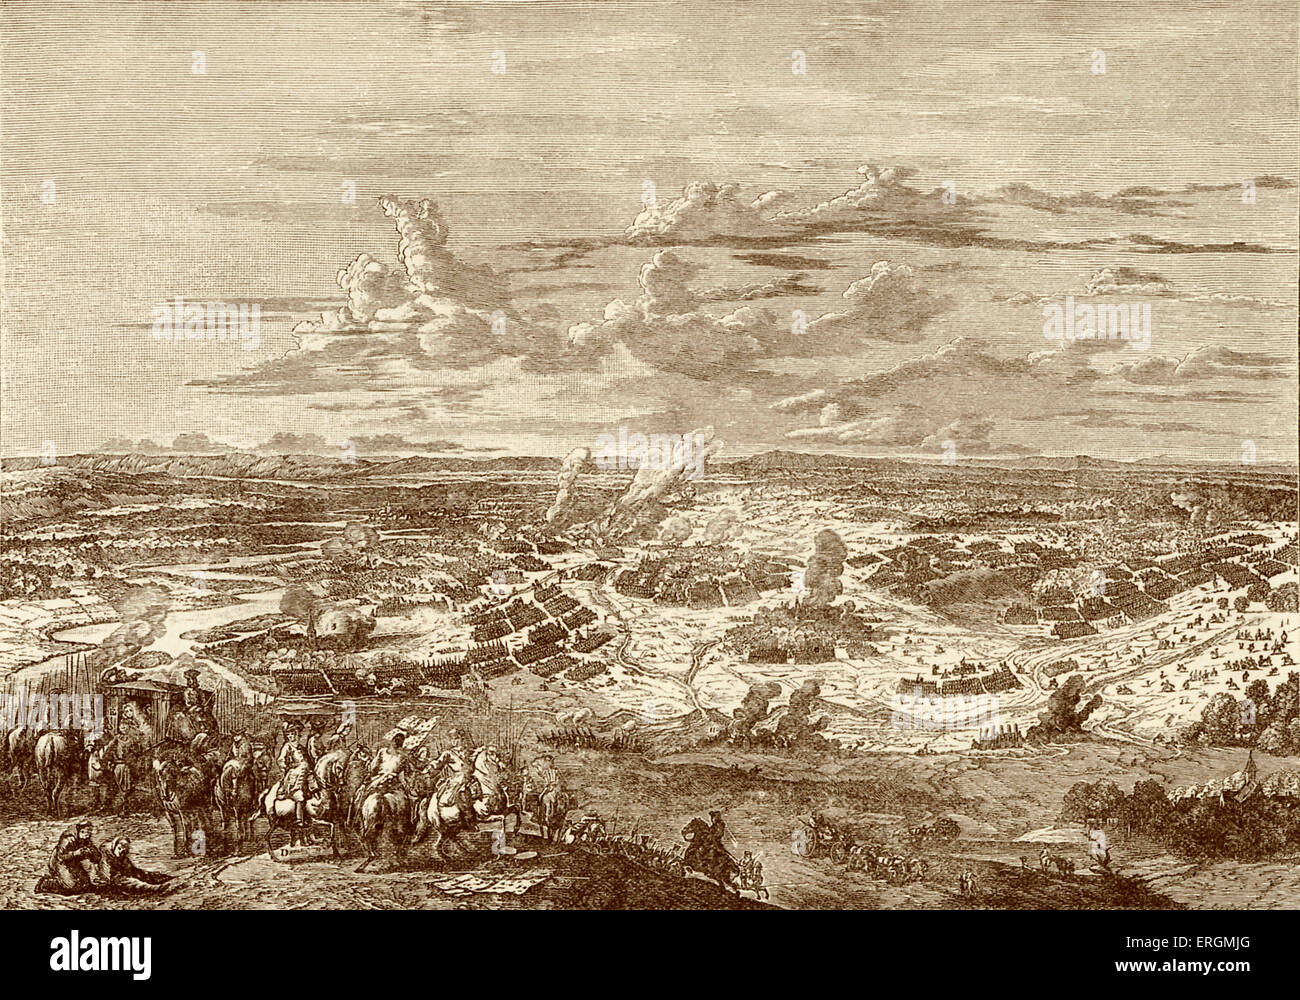 La battaglia di Blenheim (1704). La battaglia è stata una delle battaglie decisive della guerra di successione spagnola (1701-1714), in Foto Stock